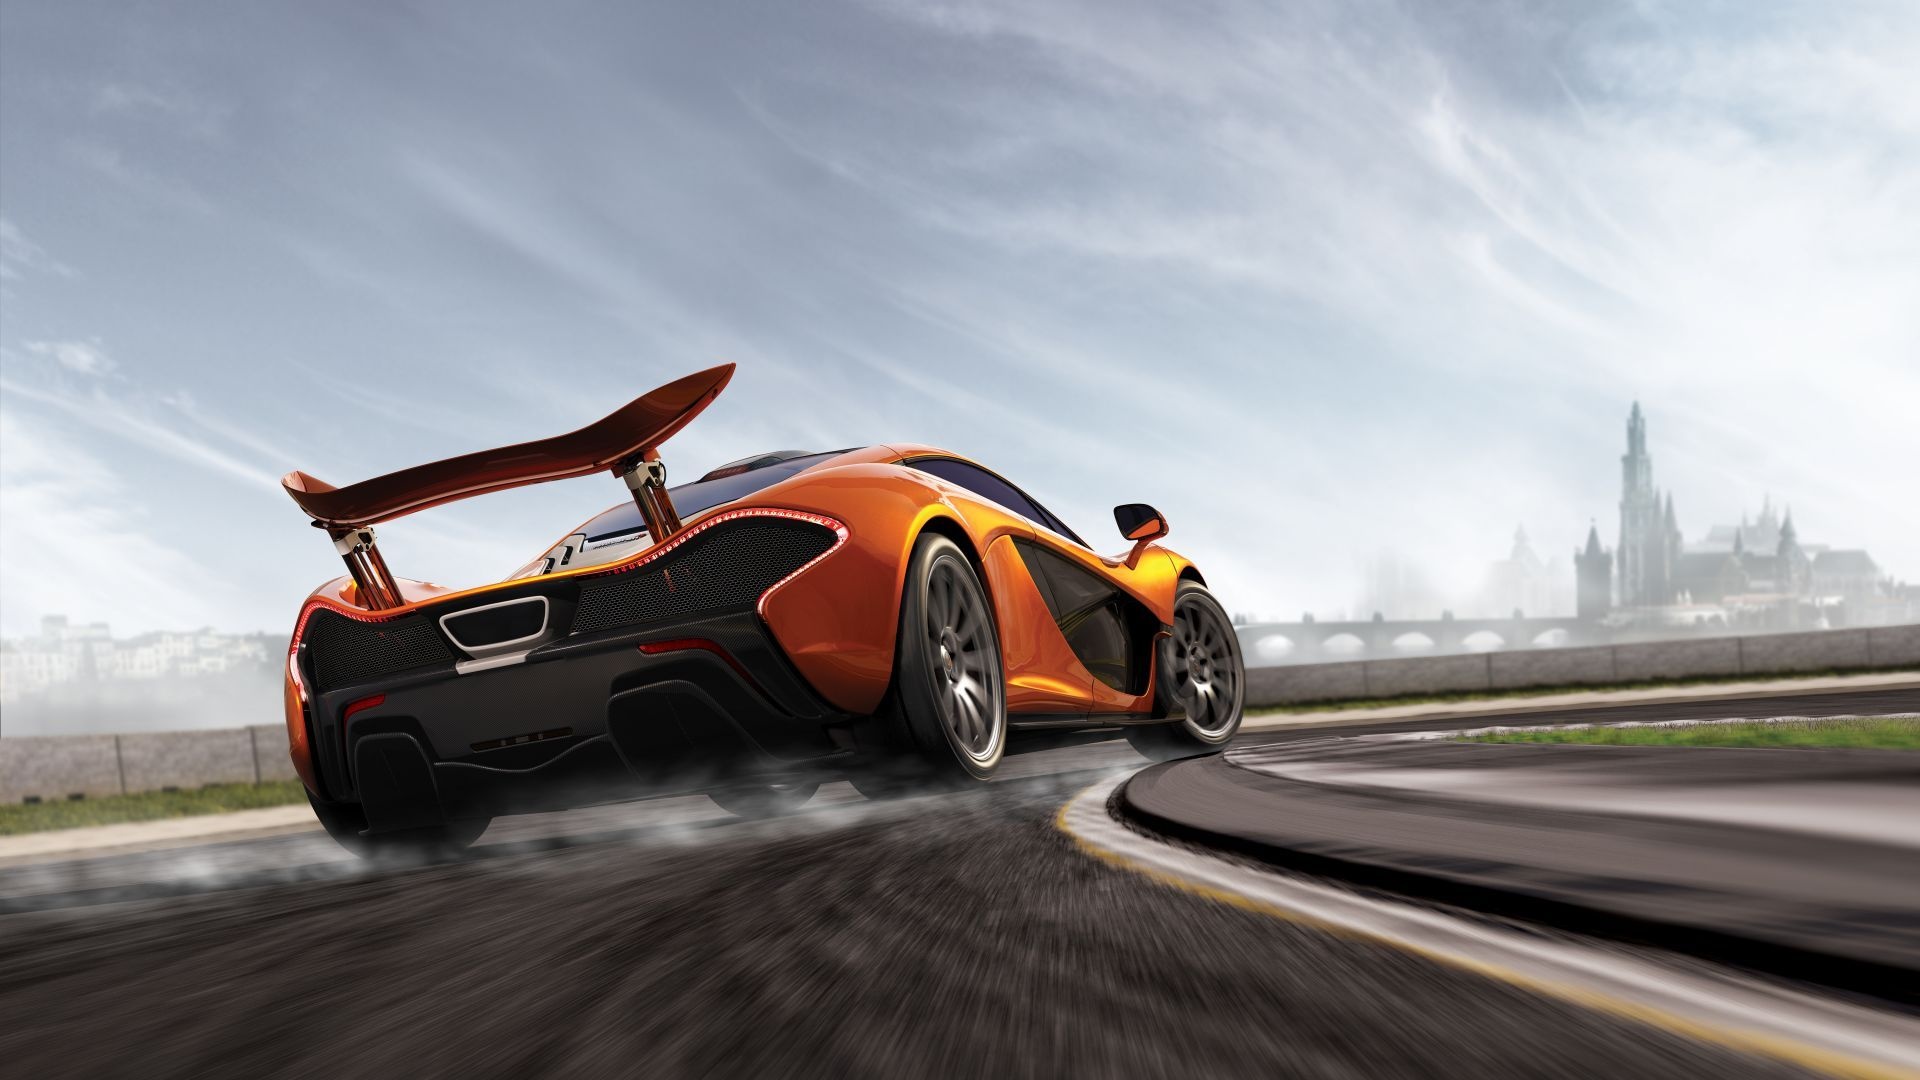 Mclaren P1, Racing car, Forza Motorsport, Speed enthusiasts, 1920x1080 Full HD Desktop